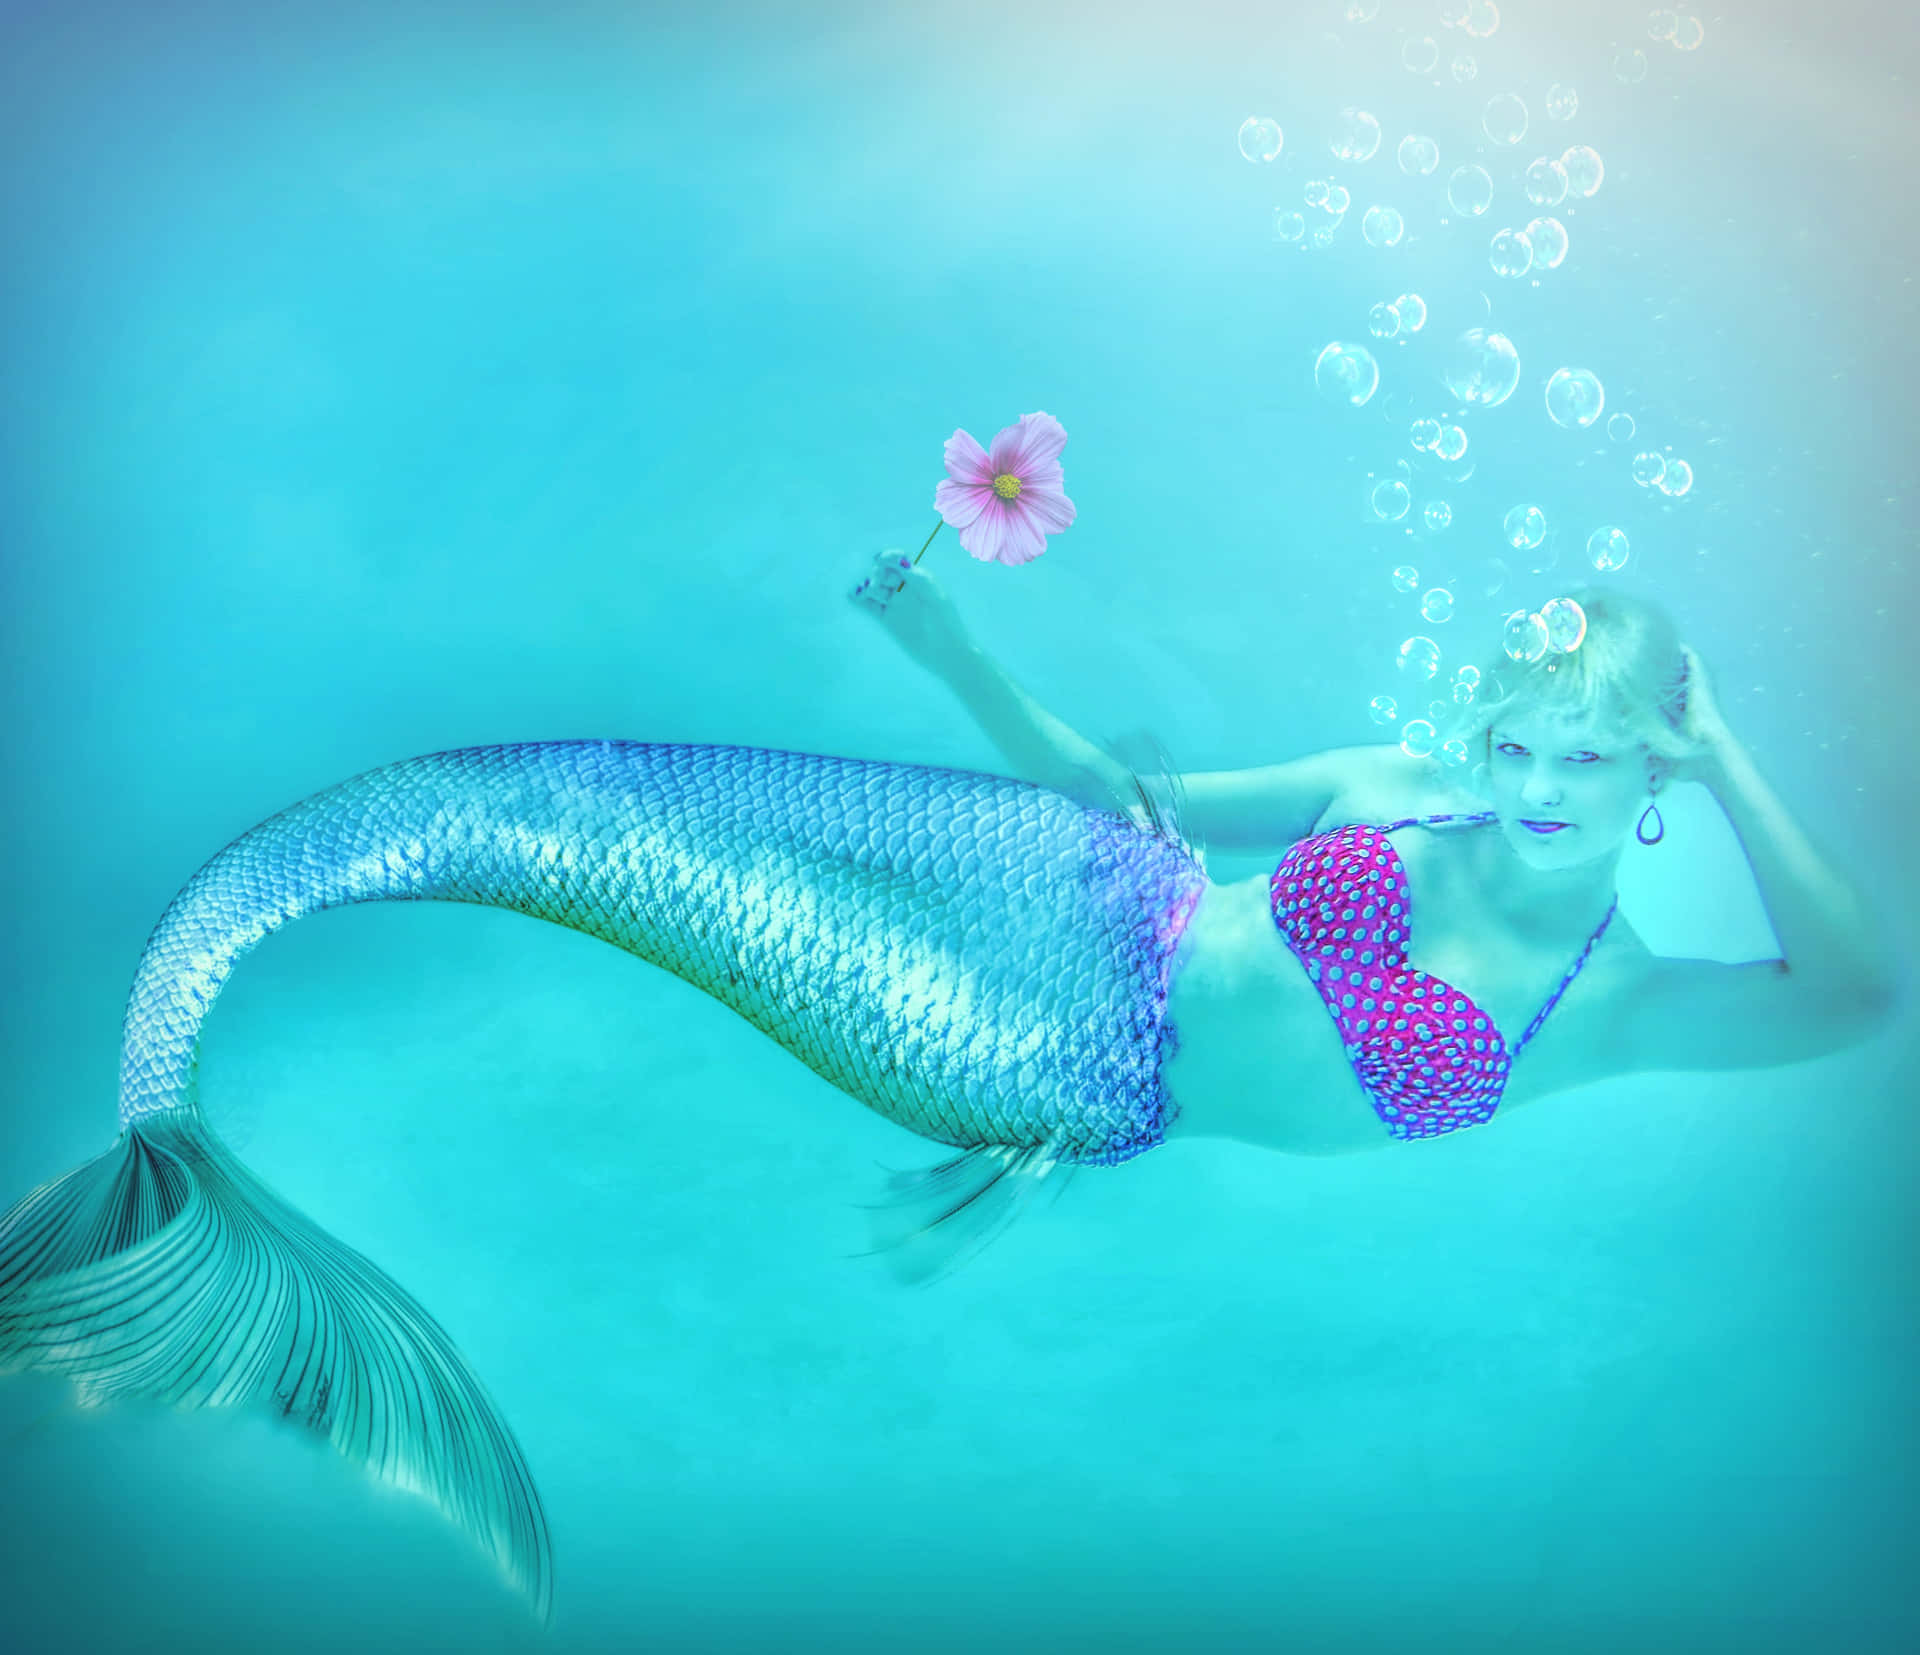 Bellezzamistica Sottomarina - Un'illustrazione Di Una Sirena Vivacemente Colorata